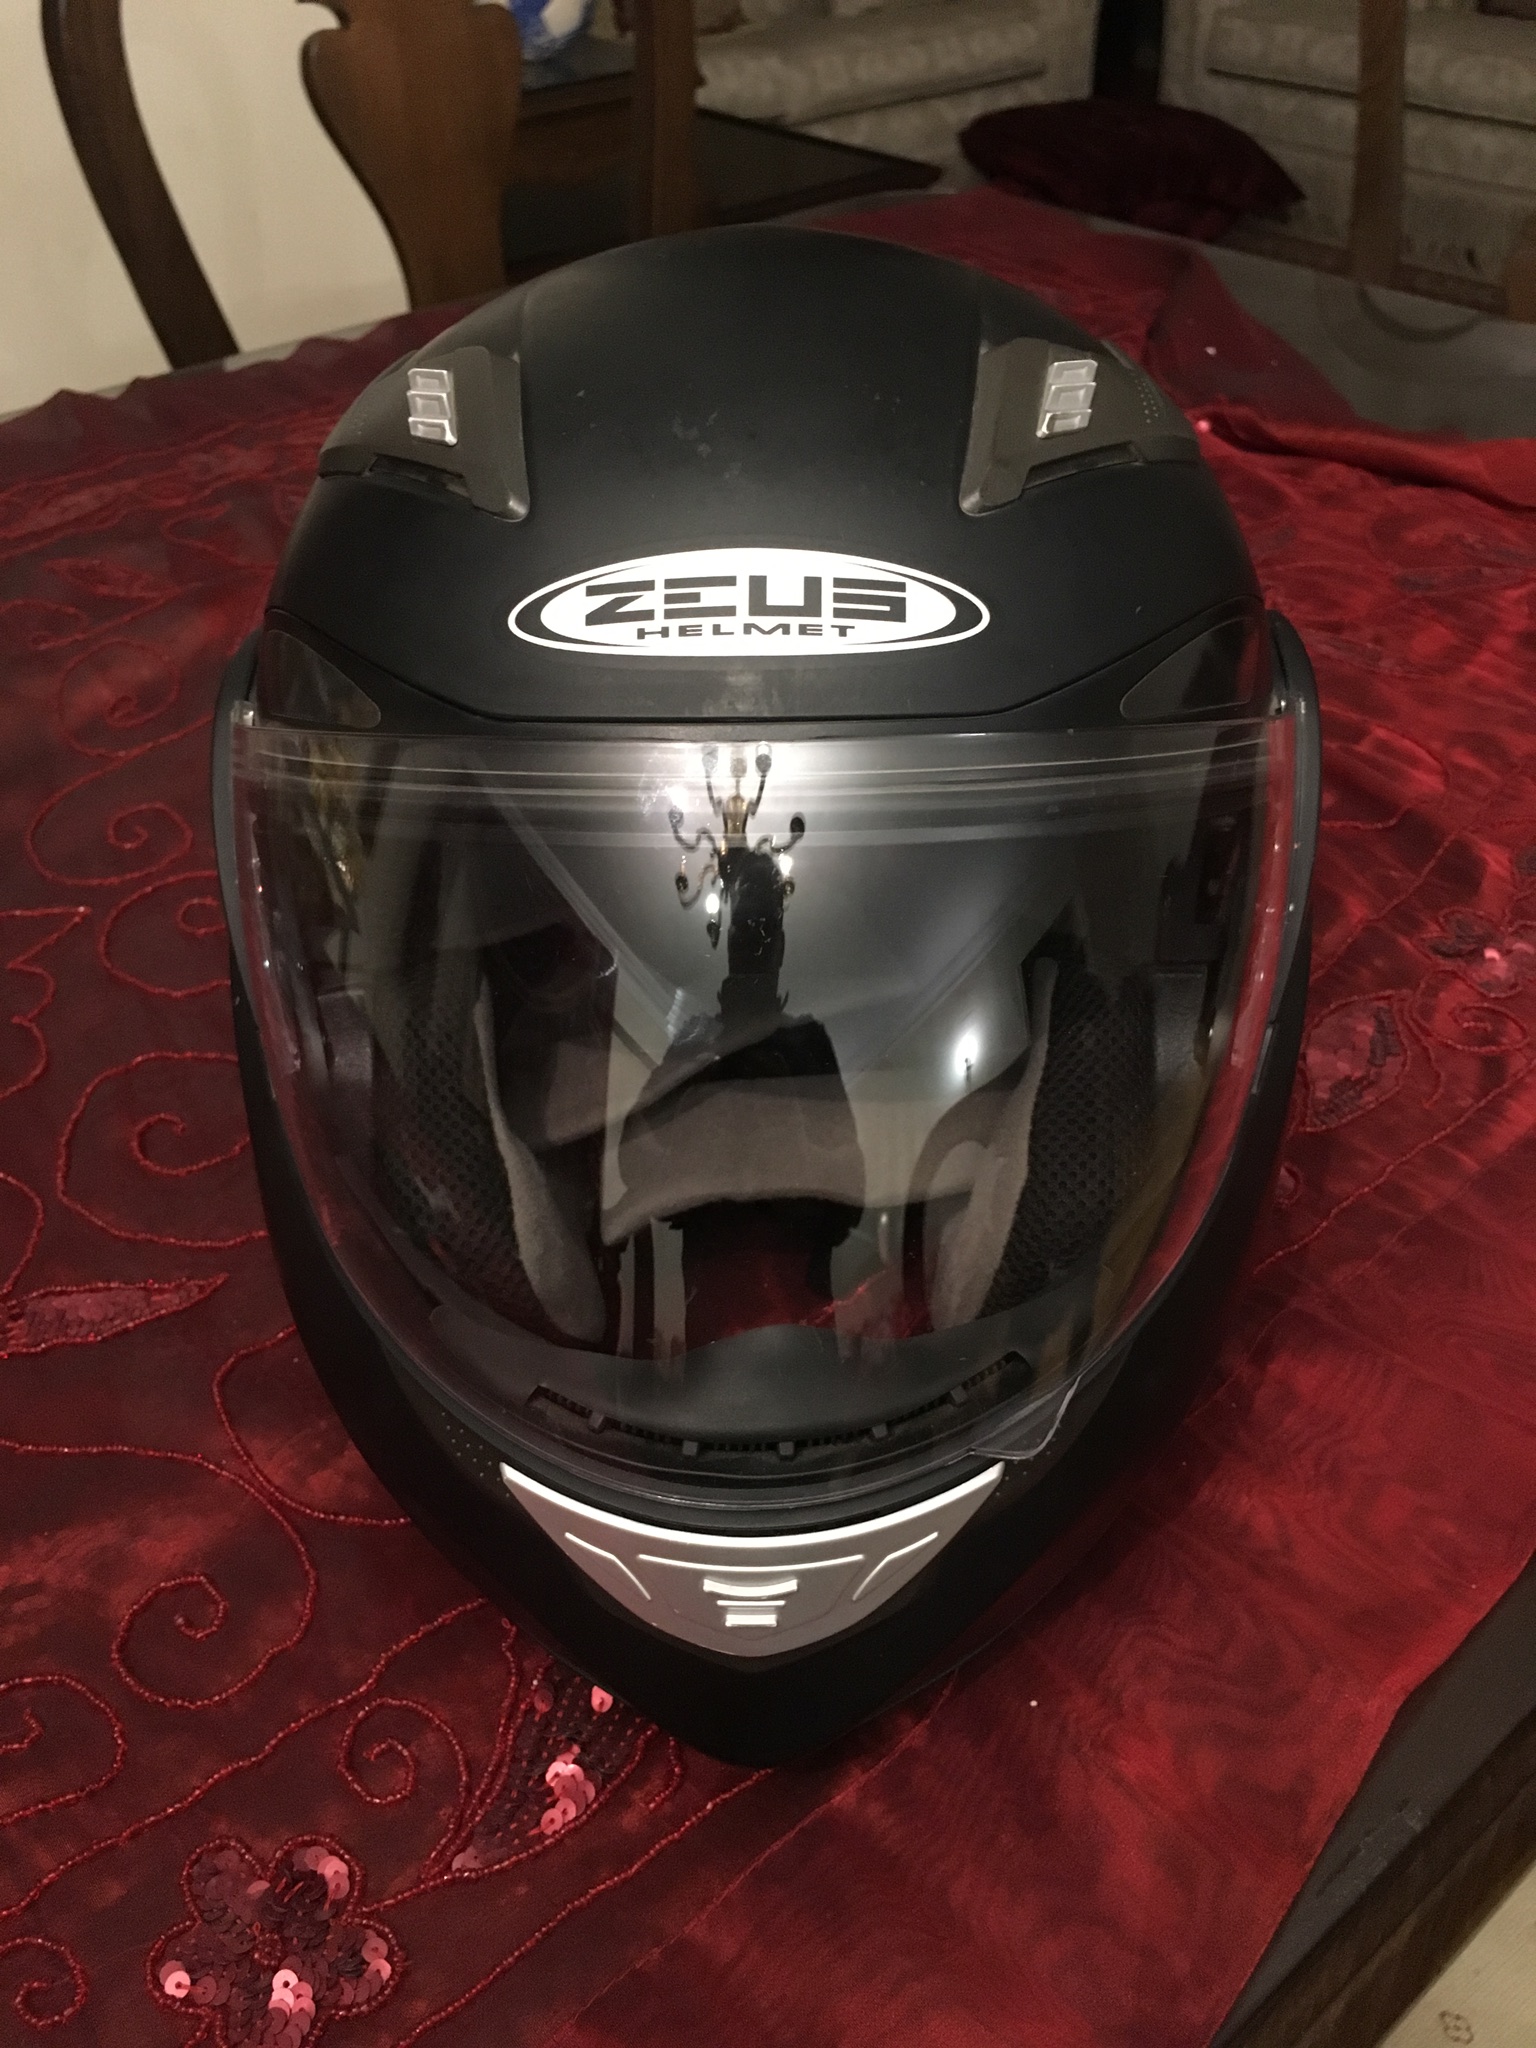 Zeus bluetooth -  Helmet